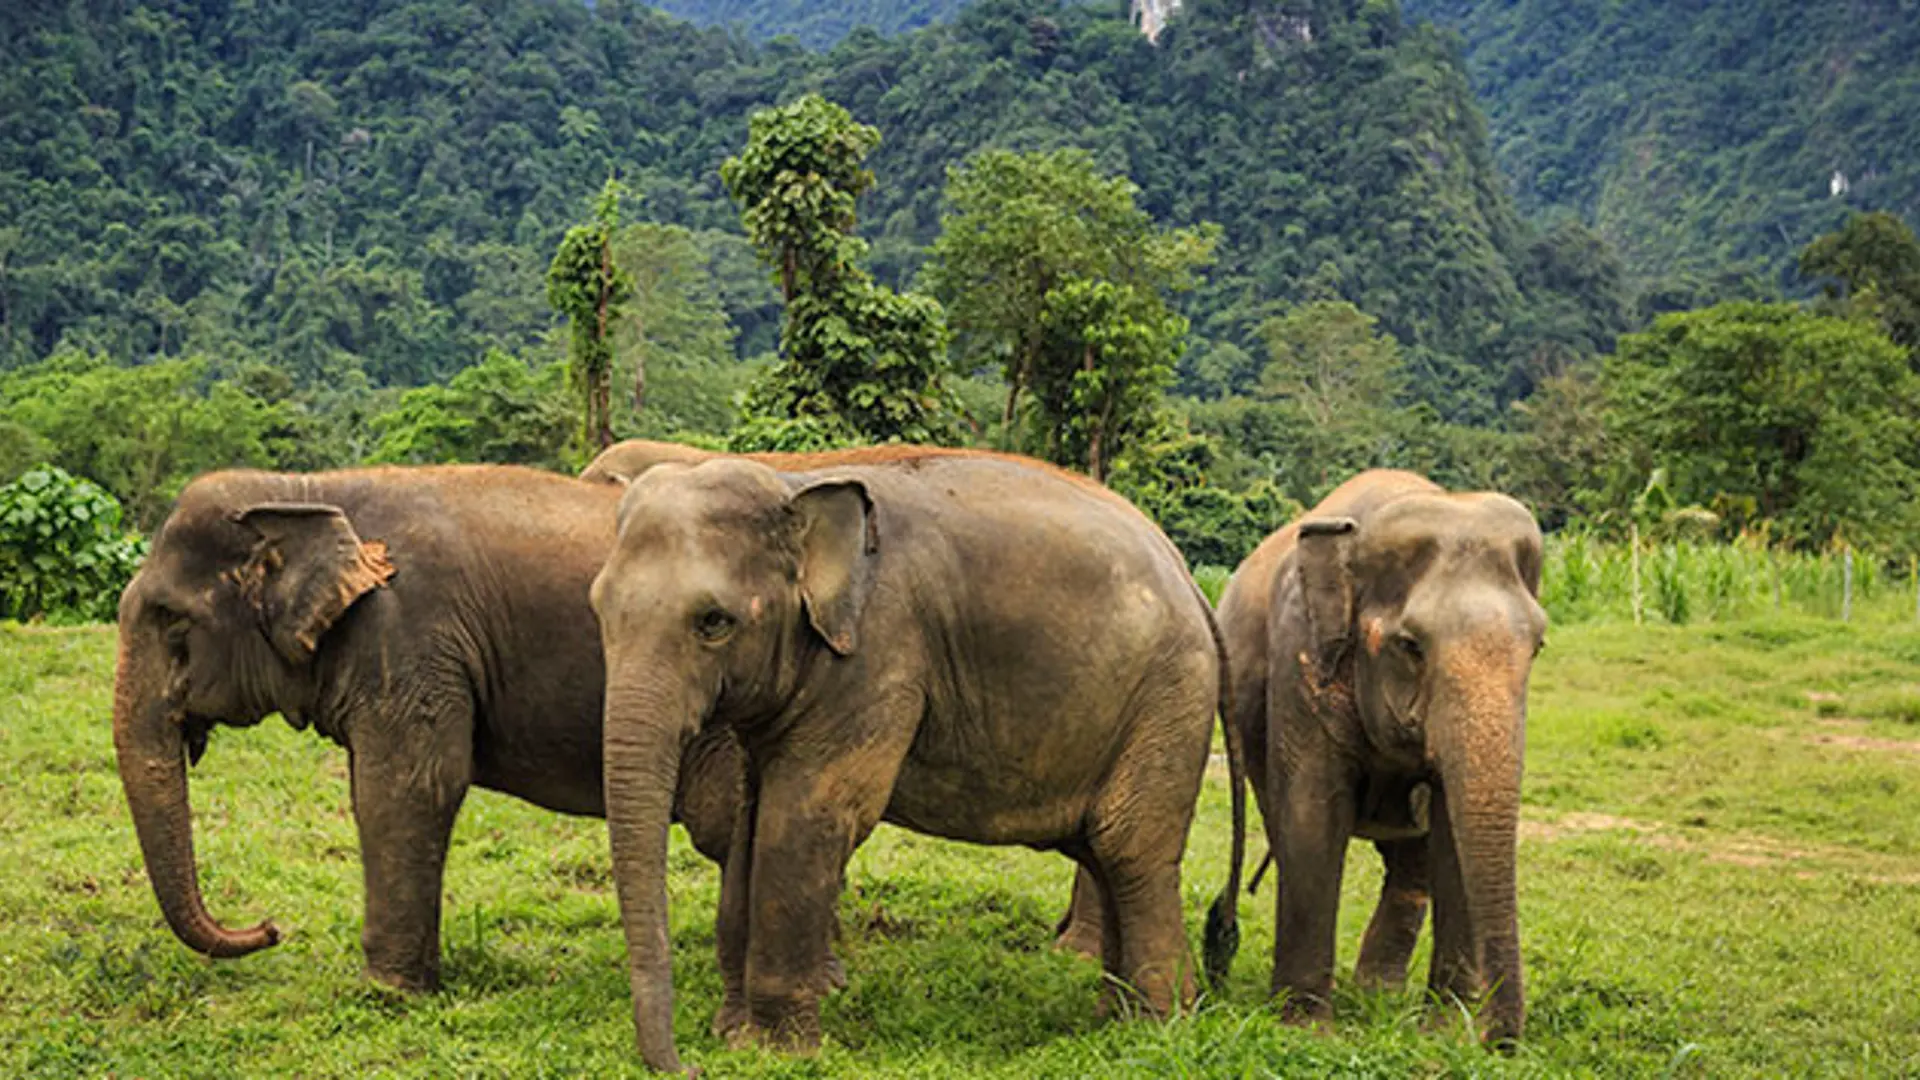 KHAO SOK NATIONAL PARK - Fra La Vela i Khao Lak kan I tage på udflugt til for eksempel elefanterne i Khao Sok National Park